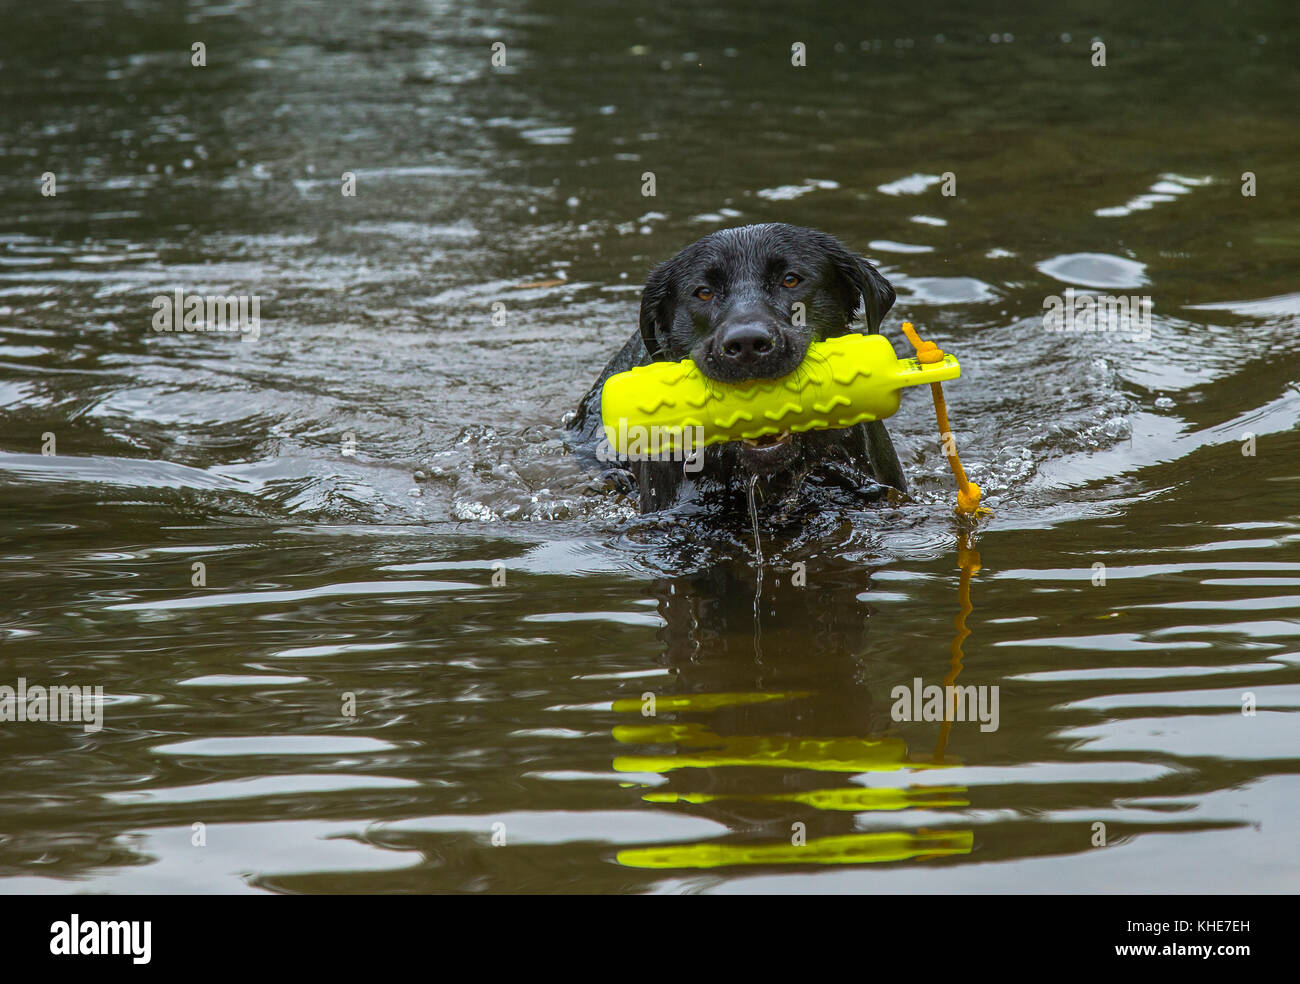 Un labrador noir est la natation avec une arme à feu factice de chien dans sa bouche Banque D'Images